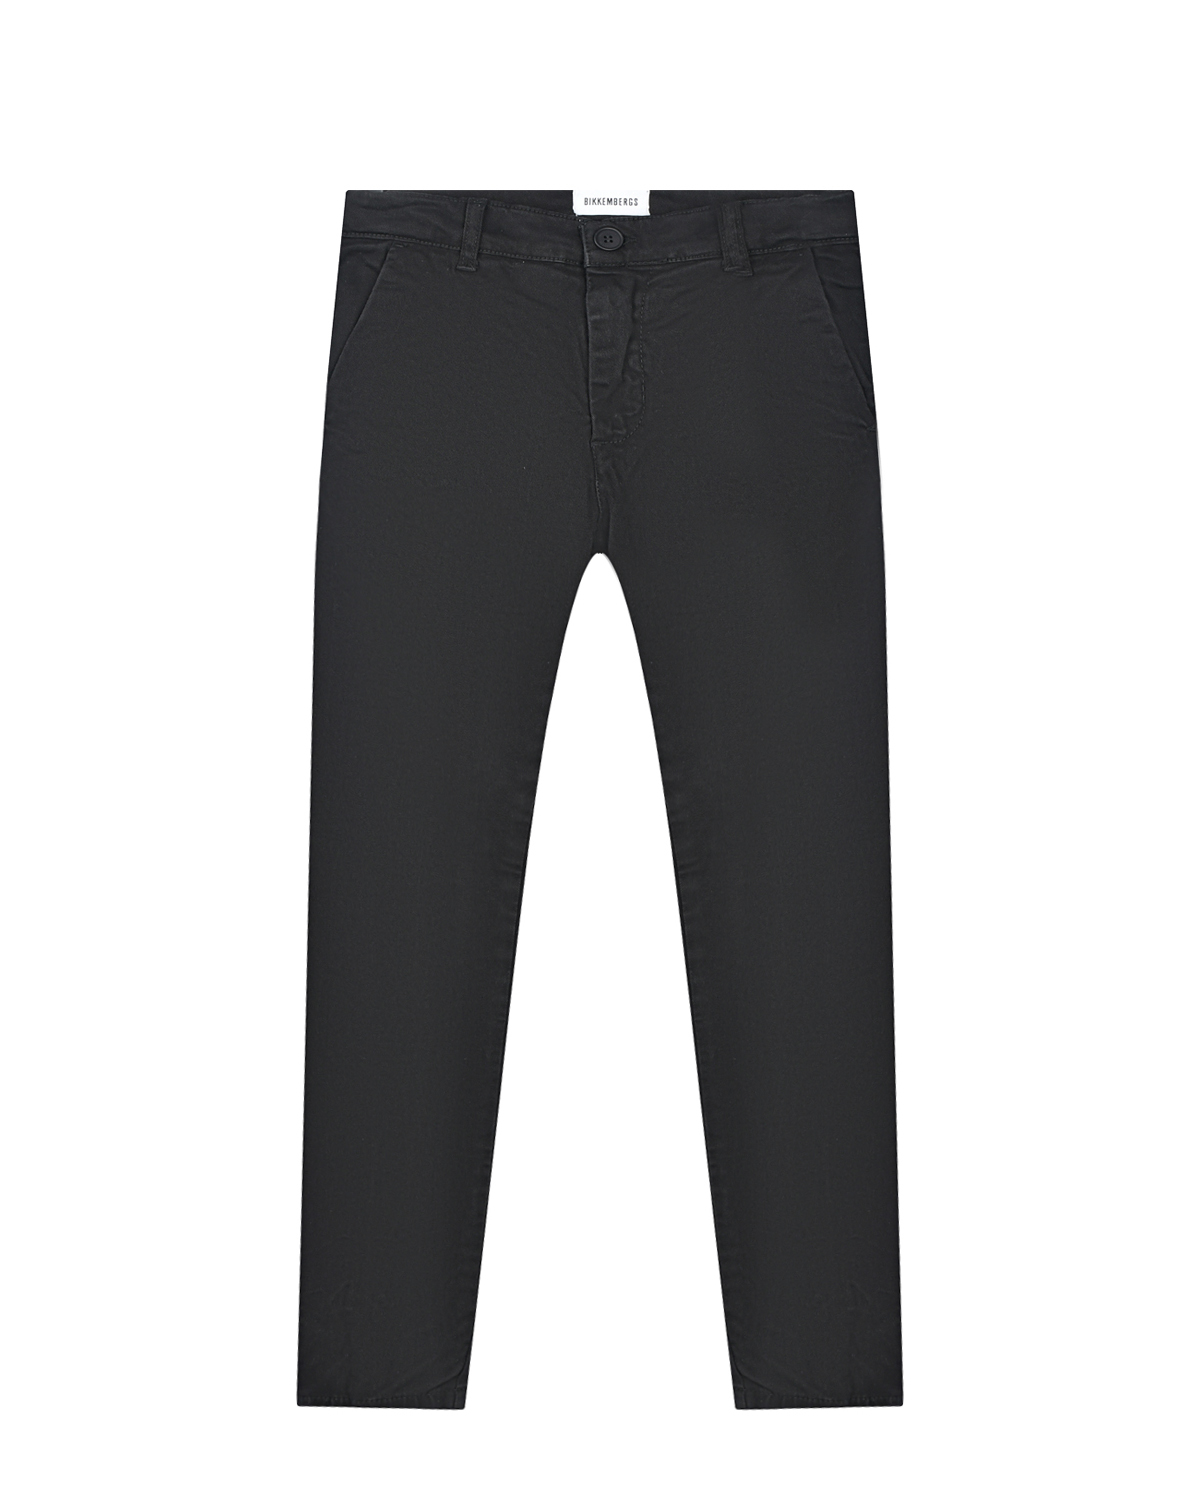 Утепленные черные джинсы Bikkembergs детские, размер 116, цвет черный - фото 1